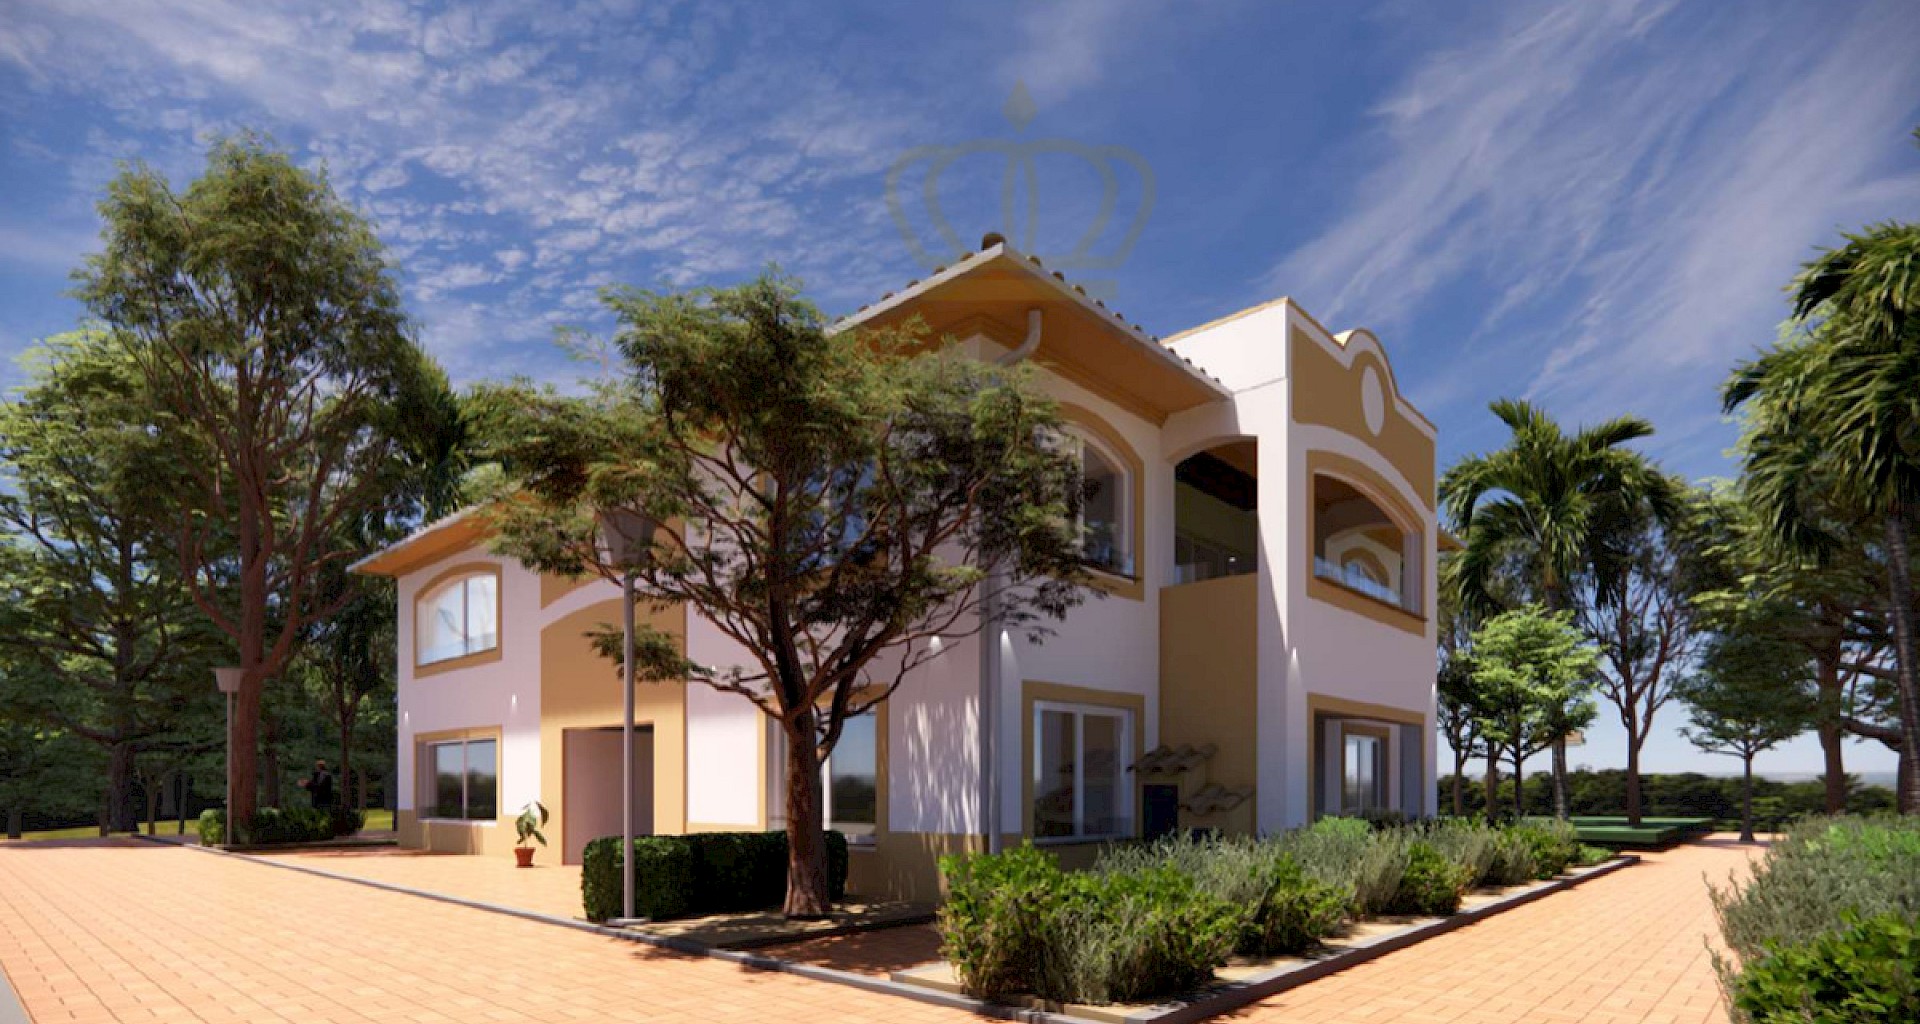 KROHN & LUEDEMANN Casa en Santa Ponsa en el complejo de apartamentos Belavent con proyecto para cuatro pisos Santa Ponsa Investment 01